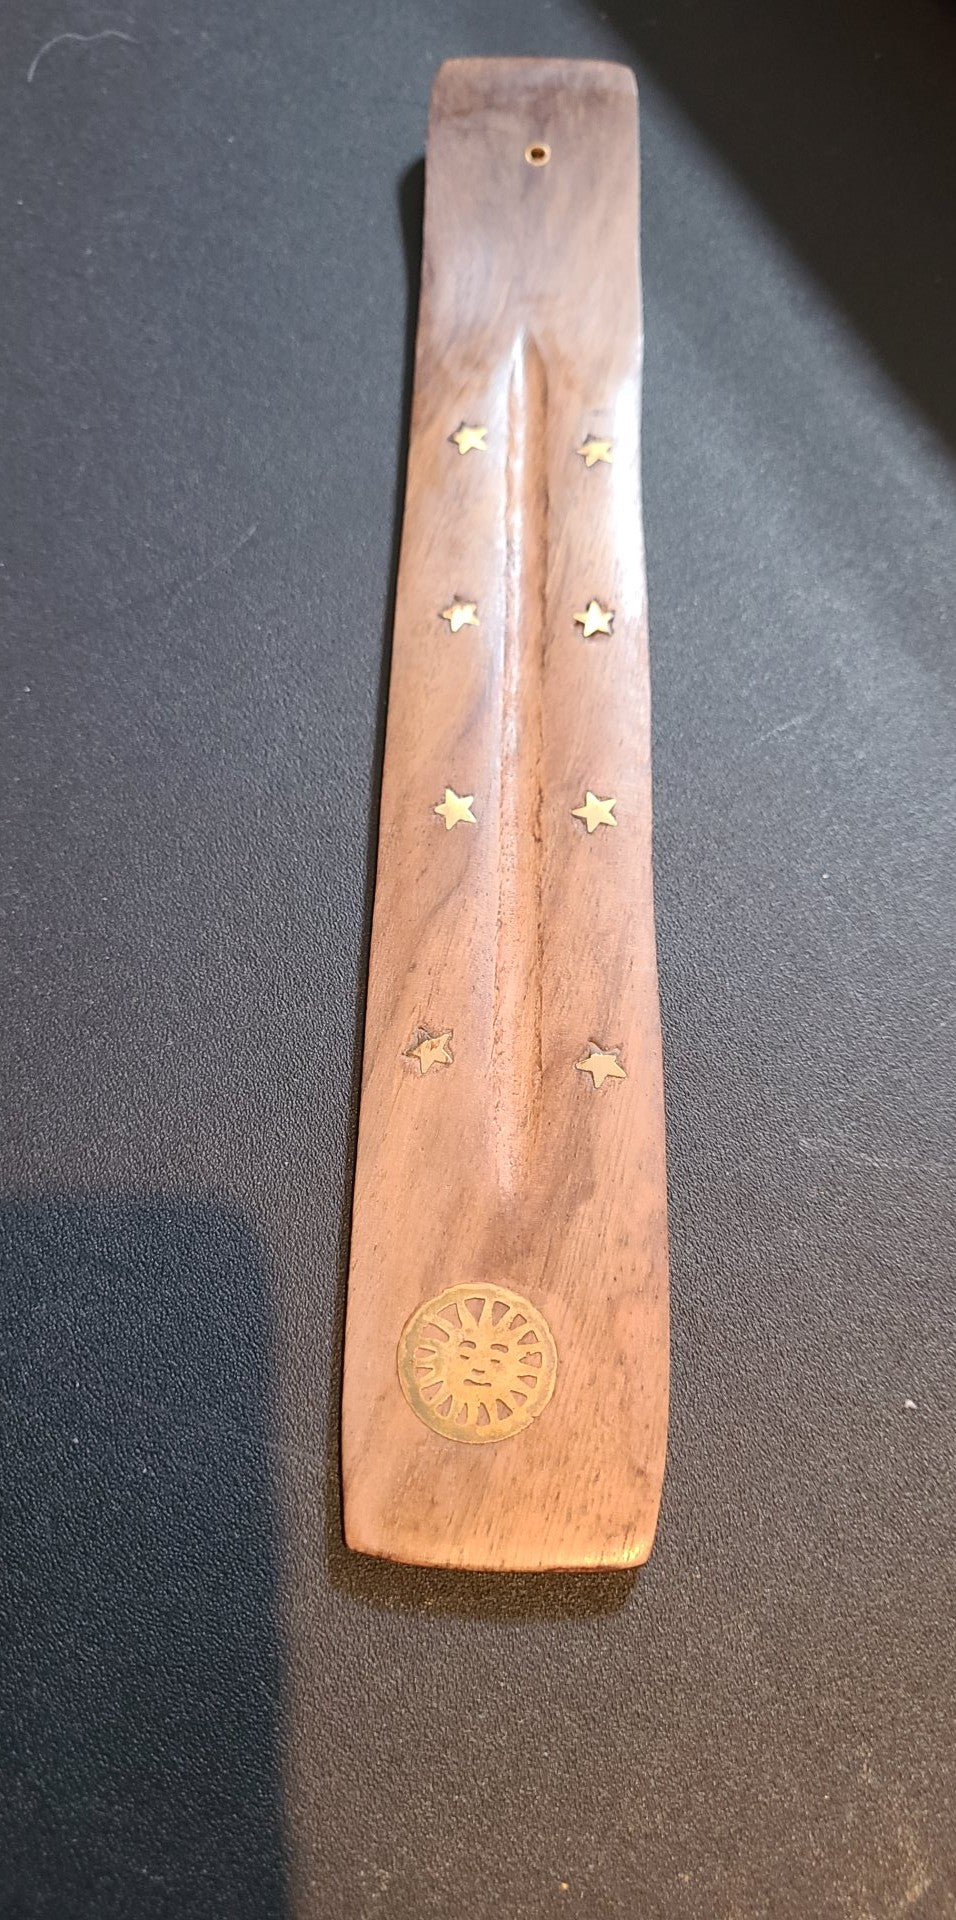 Burner, Brass Inlaid Shapes Natural Wood Wooden Stick Incense Burner